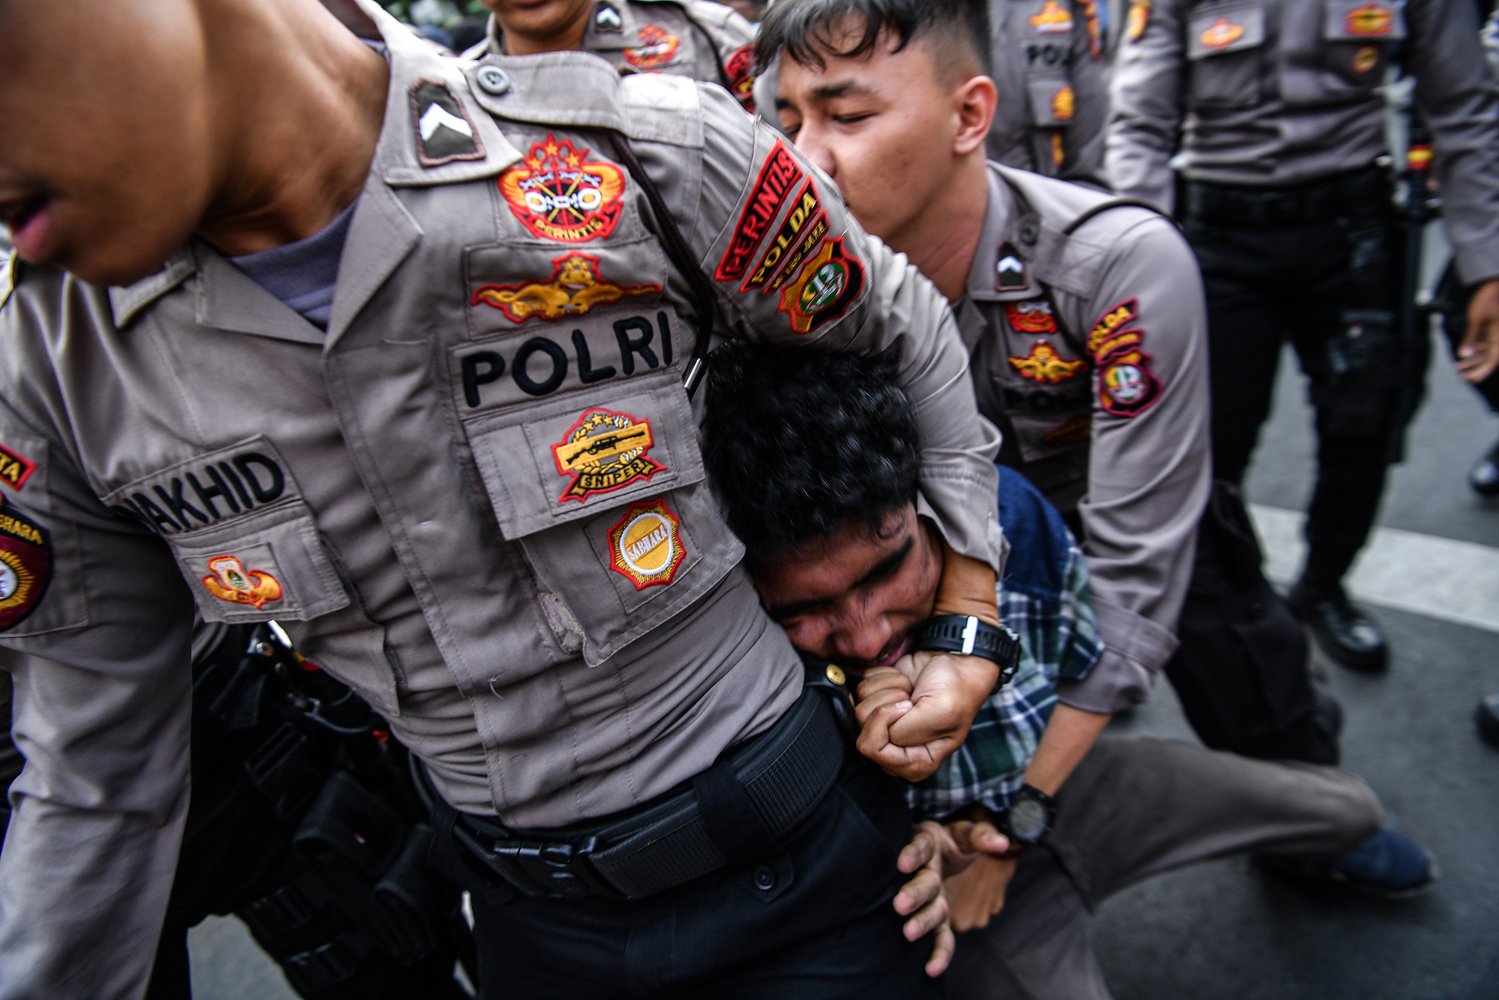 Polisi membawa anggota Himpunan Mahasiswa Islam (HMI) saat terjadi bentrokan dalam unjuk rasa di depan Kantor KPK, Jakarta, Rabu (18/9/2019). Aksi menolak Firli Bahuri menjadi pimpinan KPK tersebut berujung ricuh antara pengunjuk rasa dengan pihak kepolisian. 